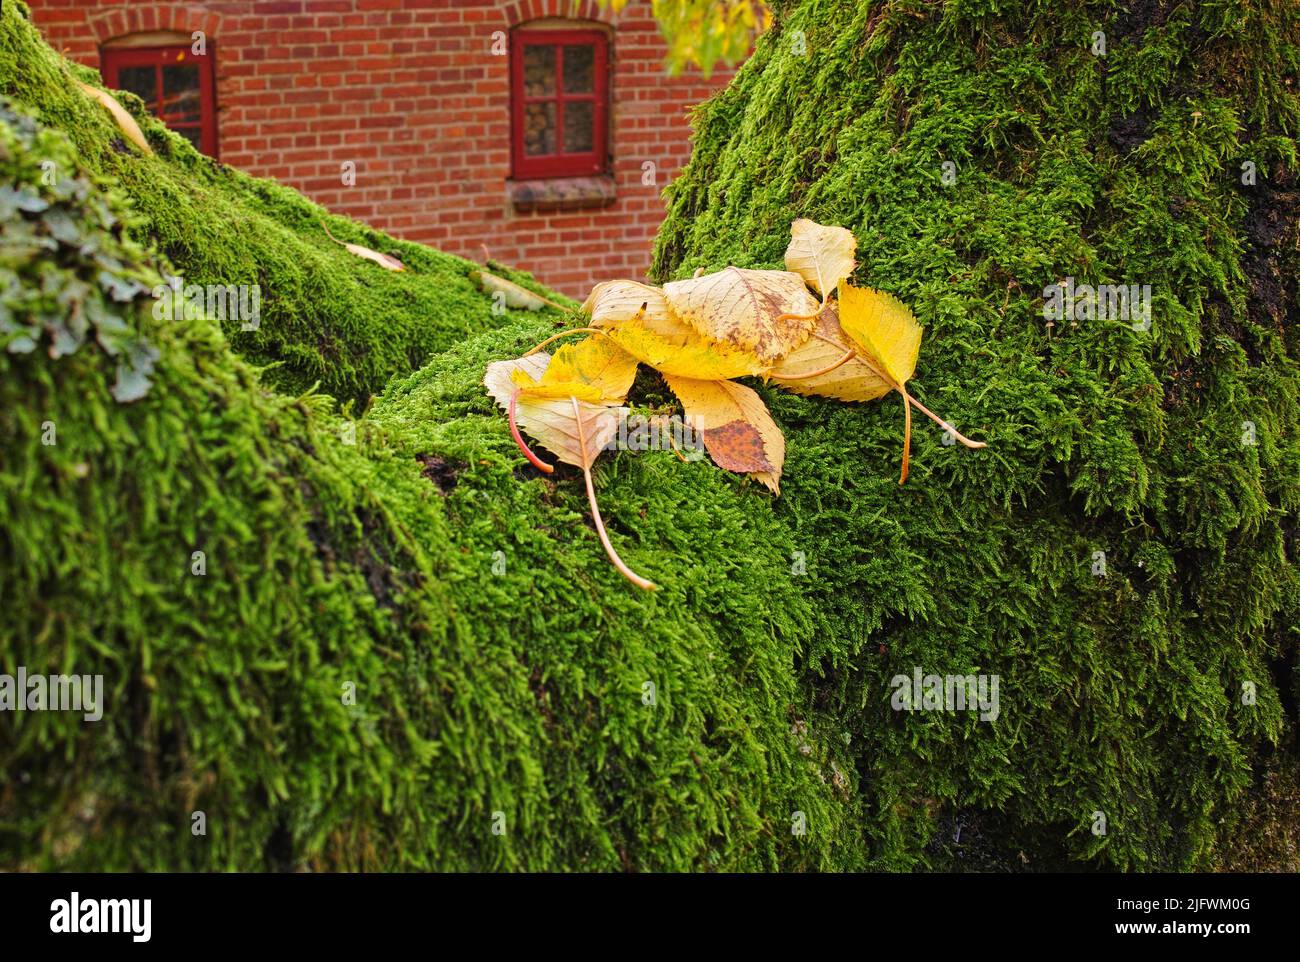 Clsoeup aus gelben Blättern auf grünem Brokatmoos mit einem Haus im Hintergrund. Moosbedeckte Wand oder Gartenhecke an einem frühen Herbstmorgen. Grün Stockfoto